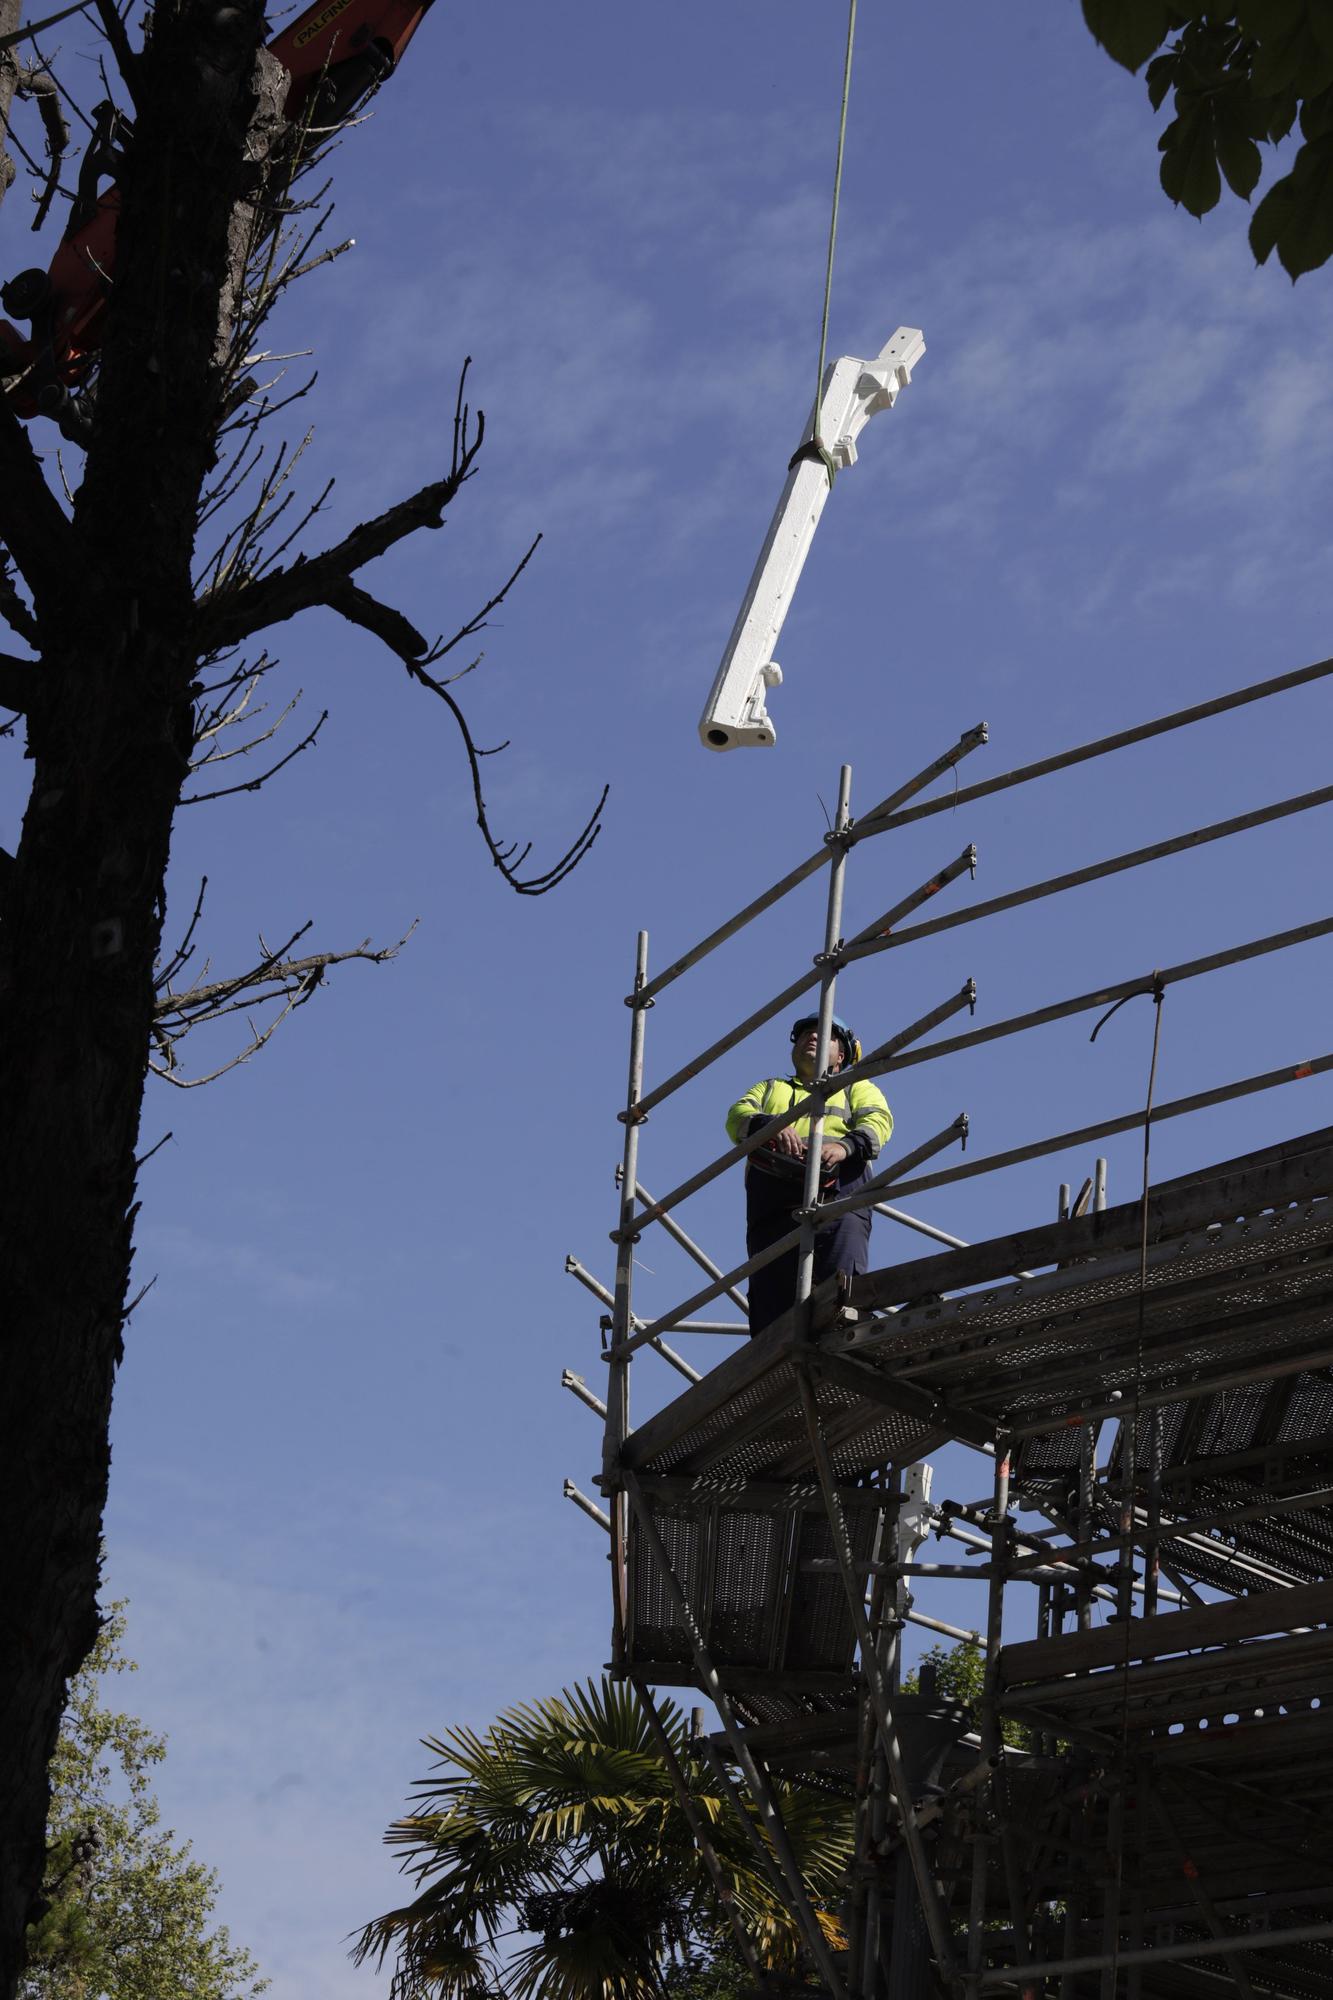 EN IMÁGENES: Comienza el montaje de la estructura del kiosco del Bombé en Oviedo